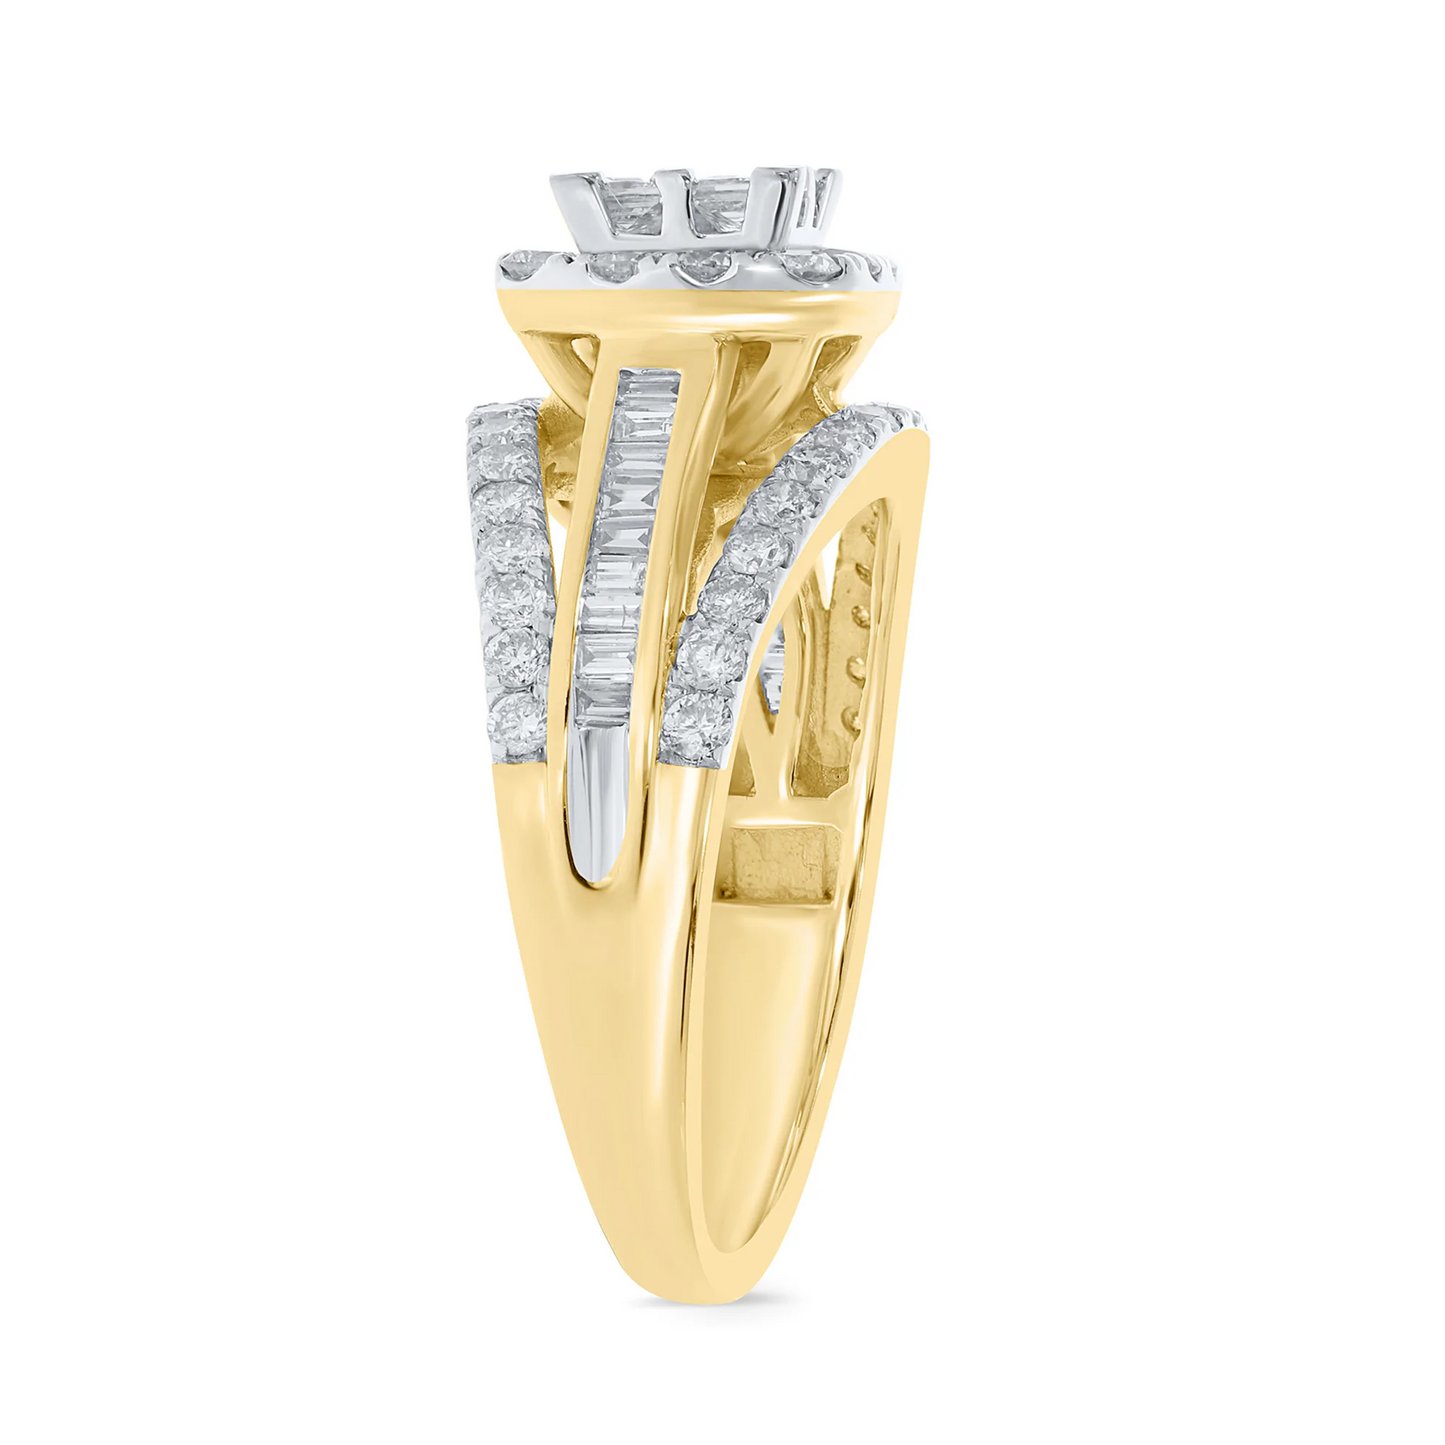 10K YELLOW GOLD 1.50 CARAT PRINCESS DIAMOND ENGAGEMENT RING WEDDING RING BRIDAL / SKU RG05595-YG